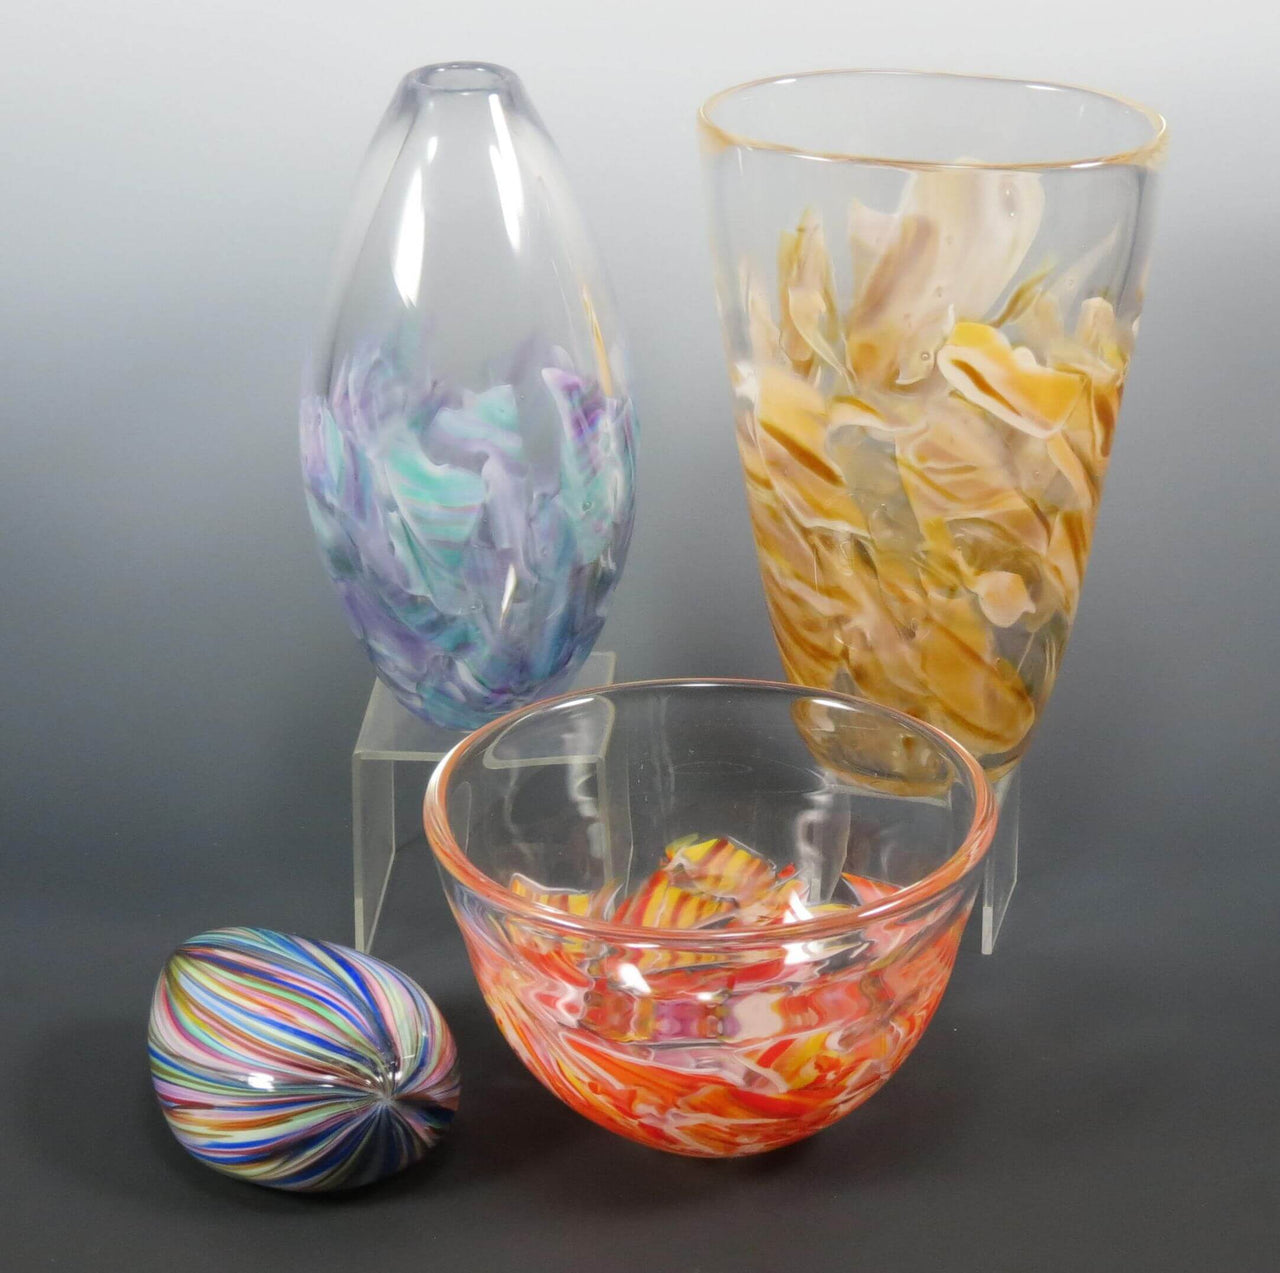 Rosetree Glass Studio Smash Glass Glass Oval Smash Glass Vase by Rosetree Glass Studio